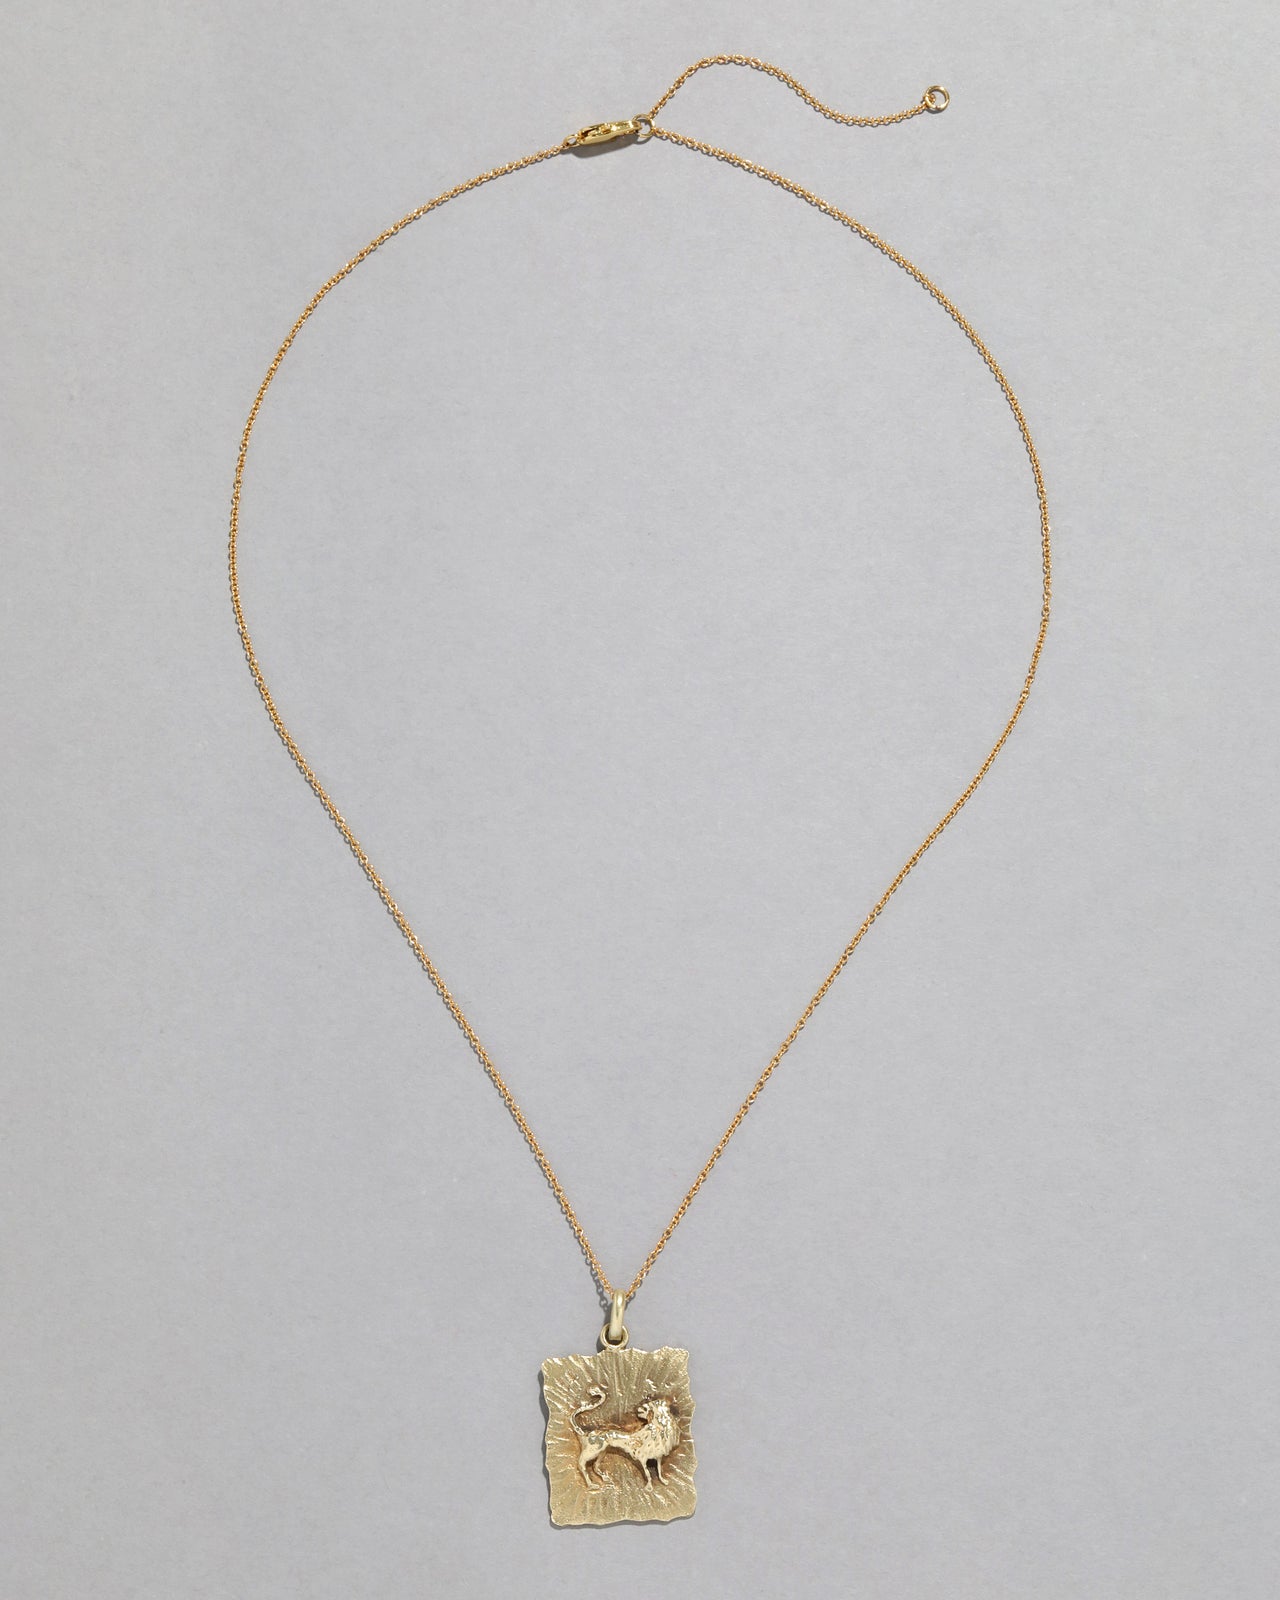 Vintage 1970s 14k Gold Lion Pendant Necklace - Photo 2